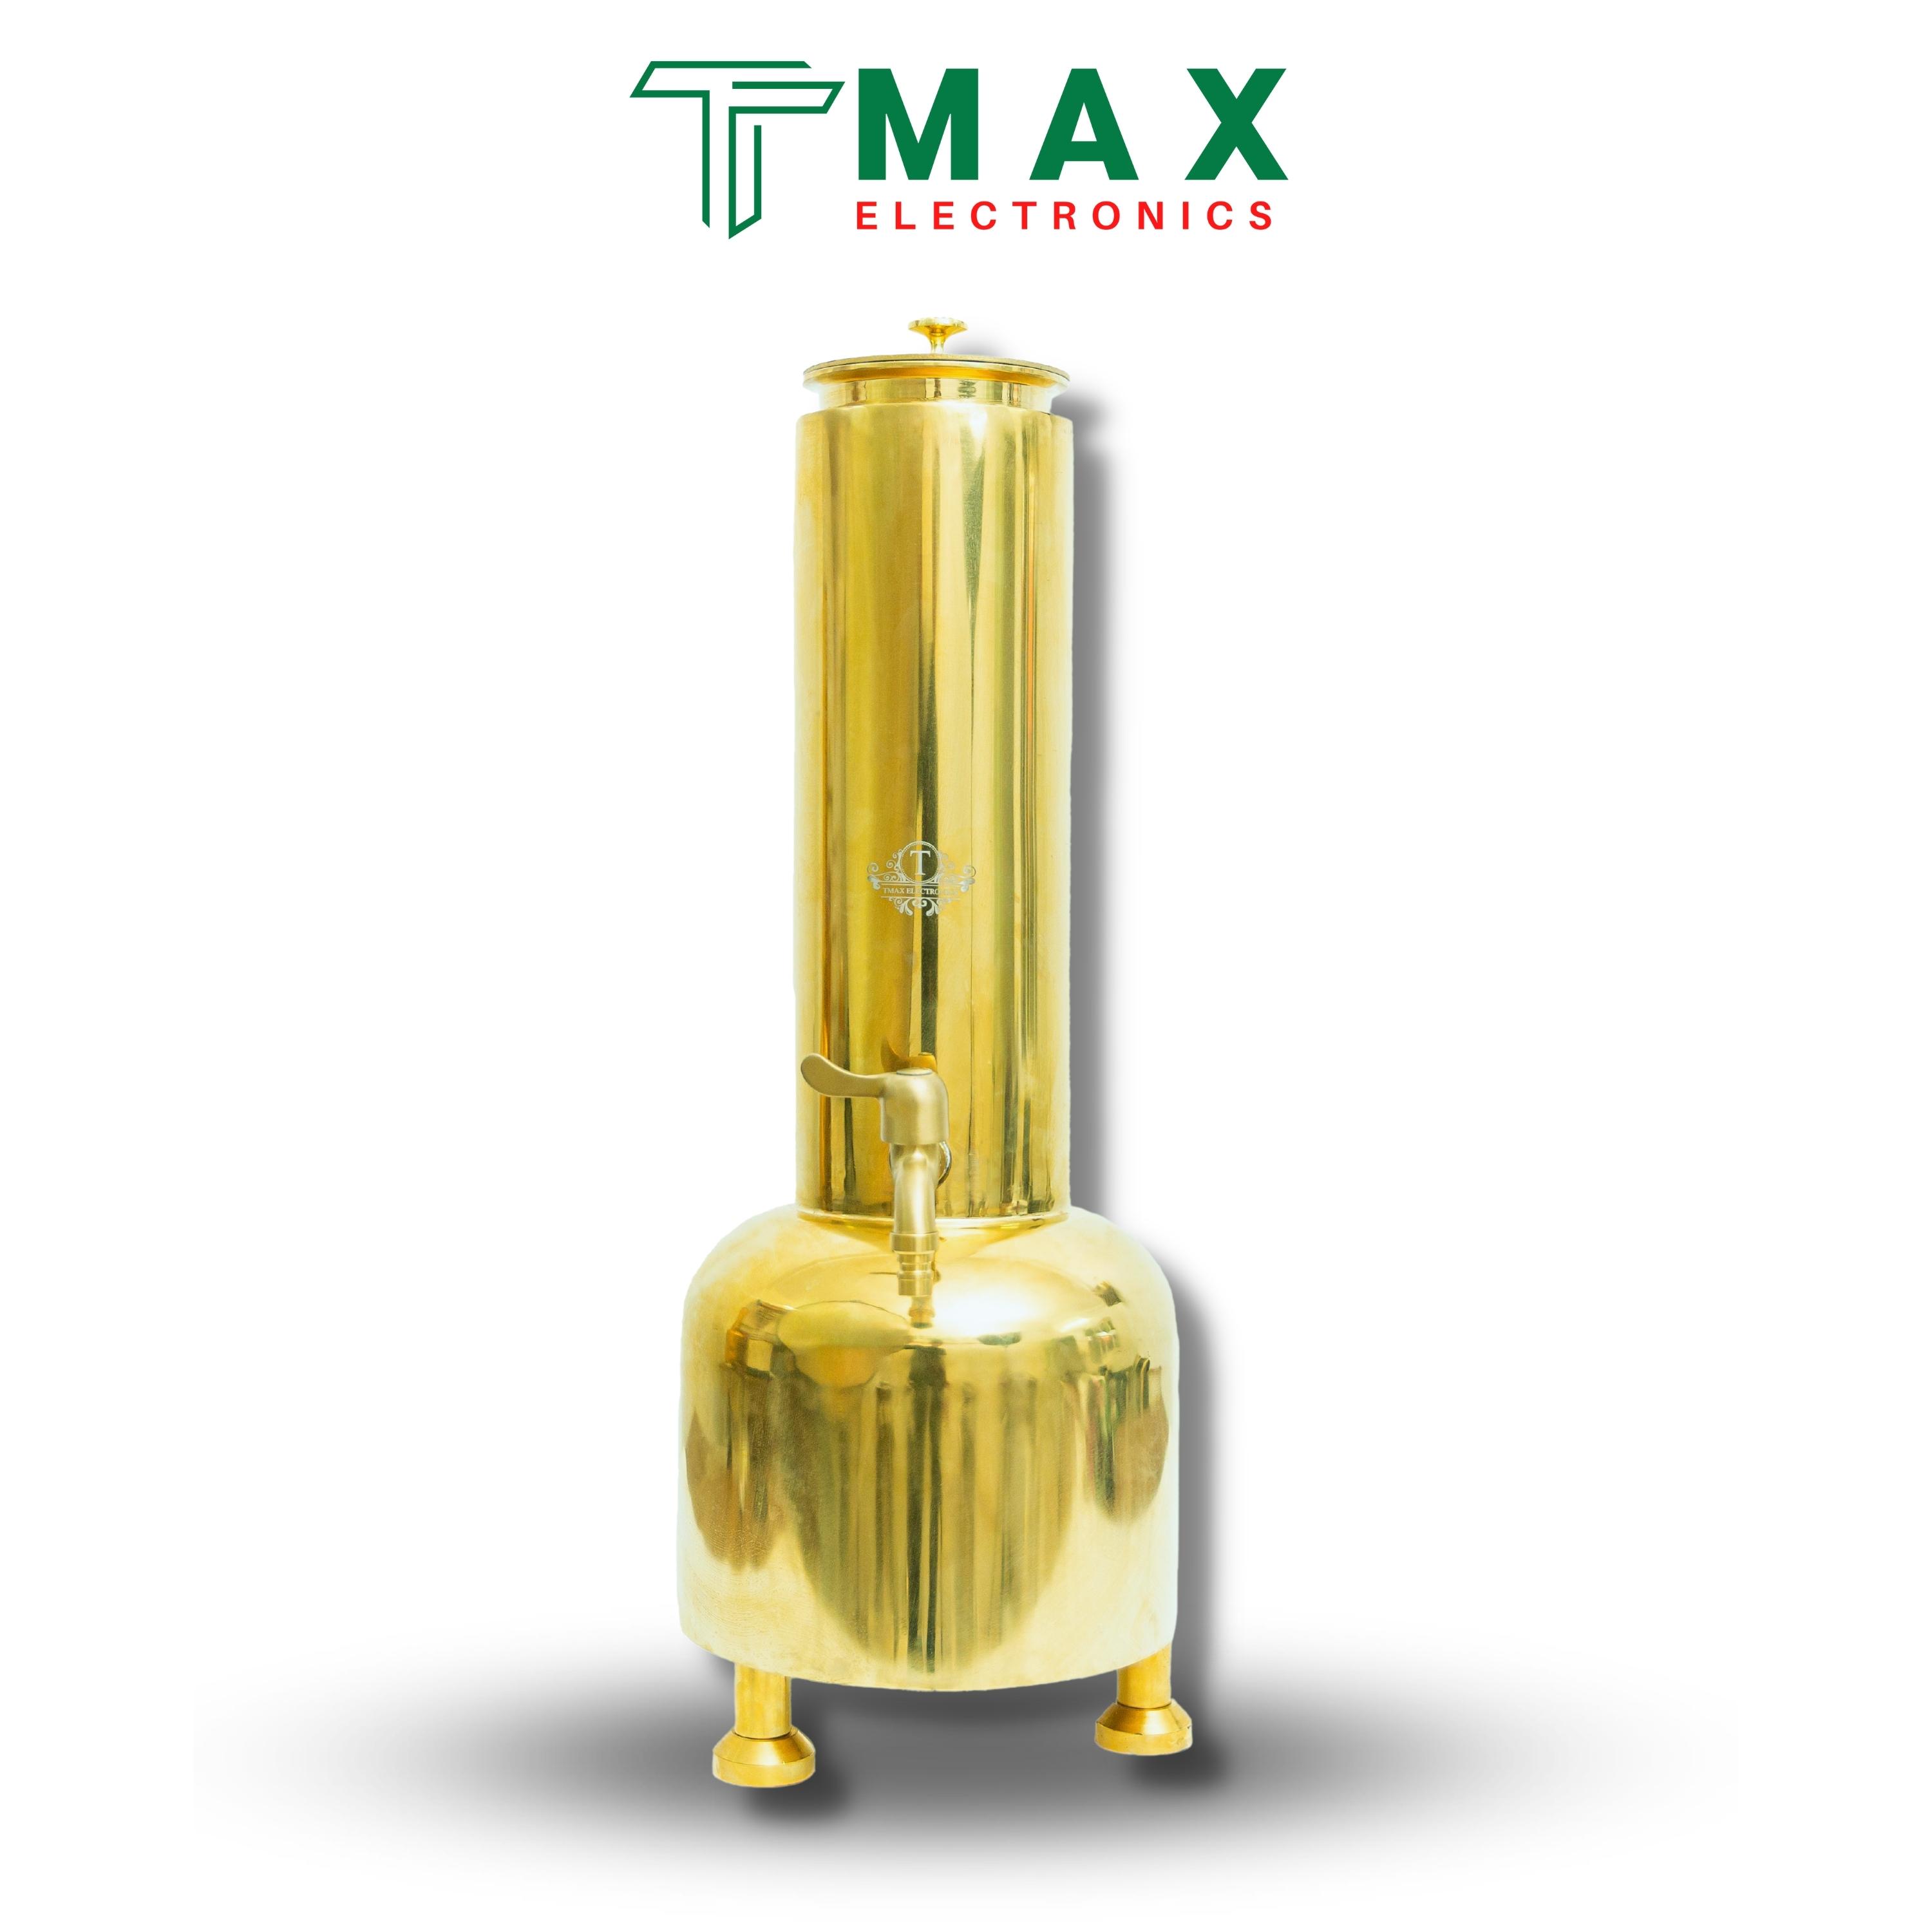 Máy Lão Hóa Rượu Tmax Electronics 3.5 Lít